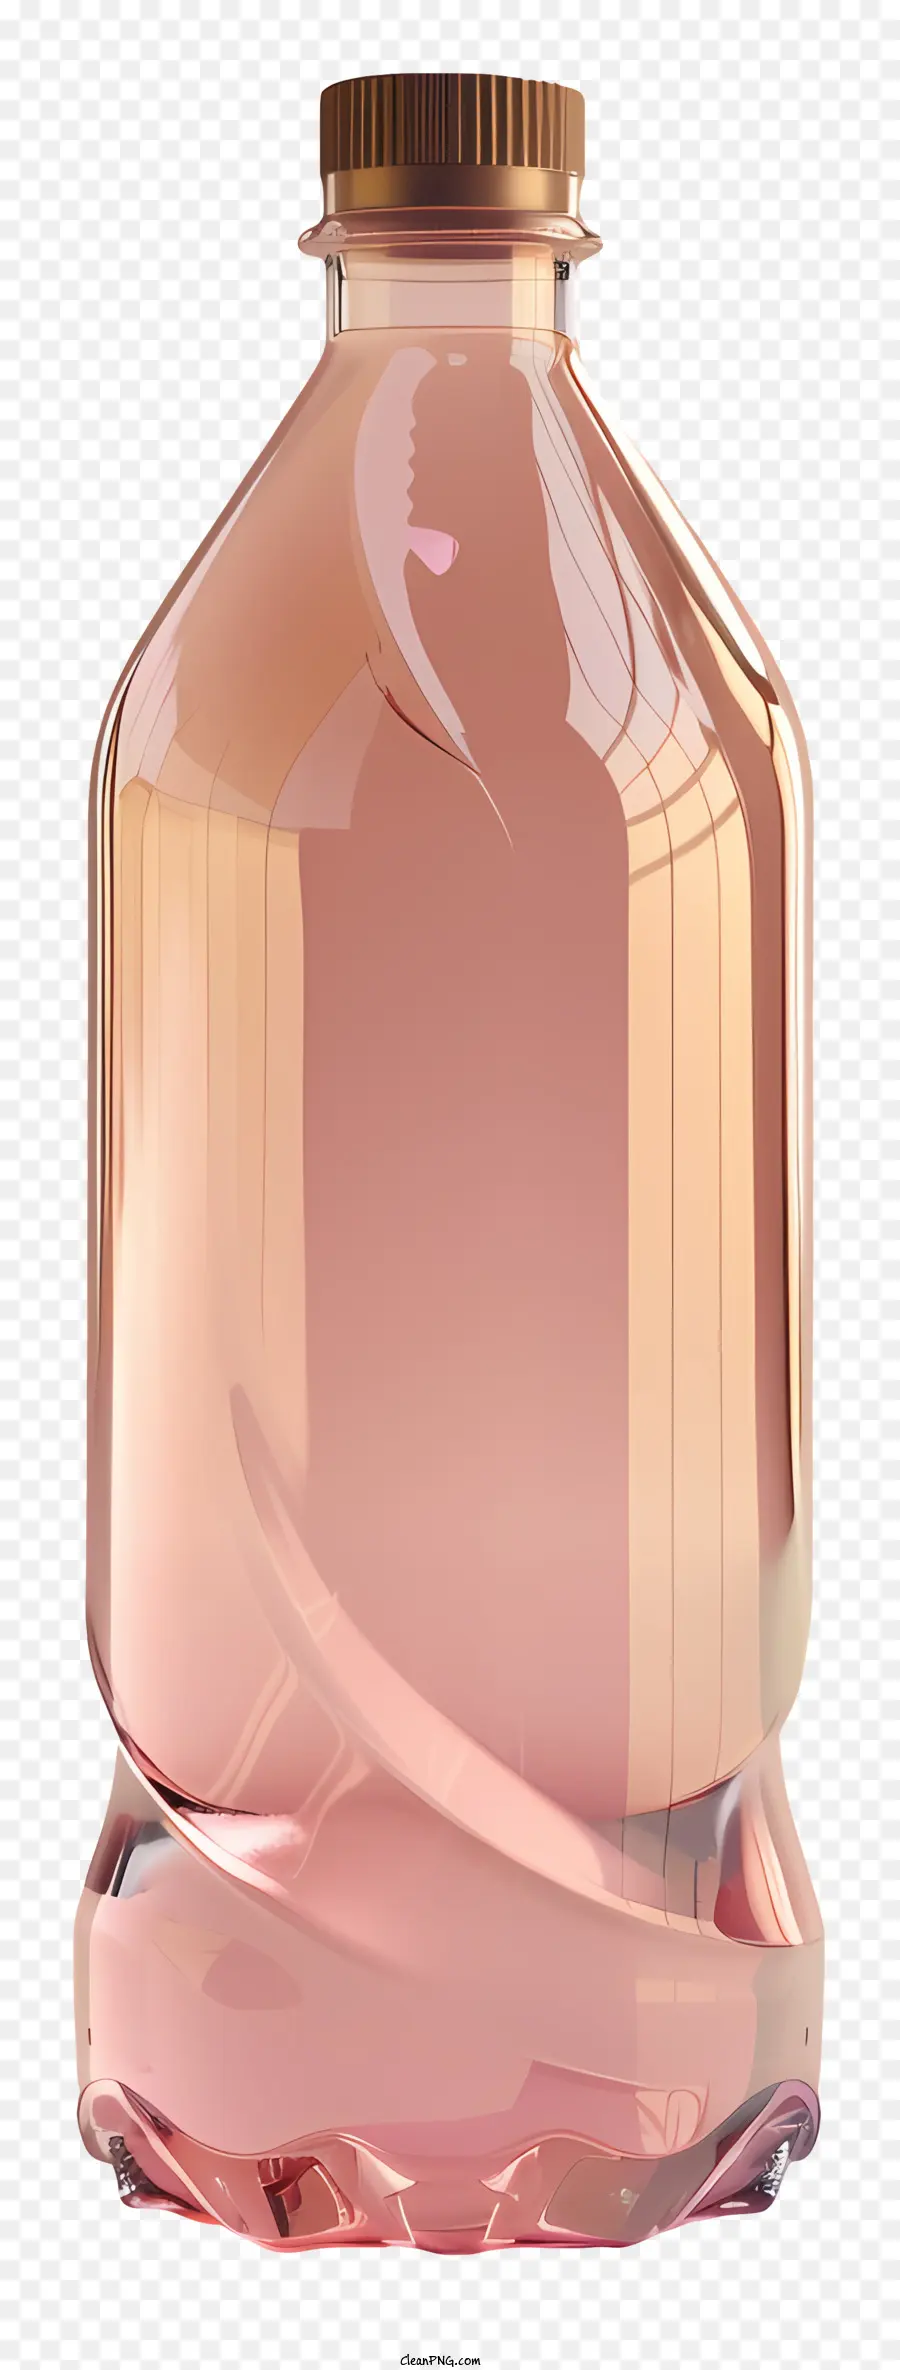 Kunststoff Flasche - Rosa, unbeschriebene Flasche mit offenem Kappengehalt unbekannt